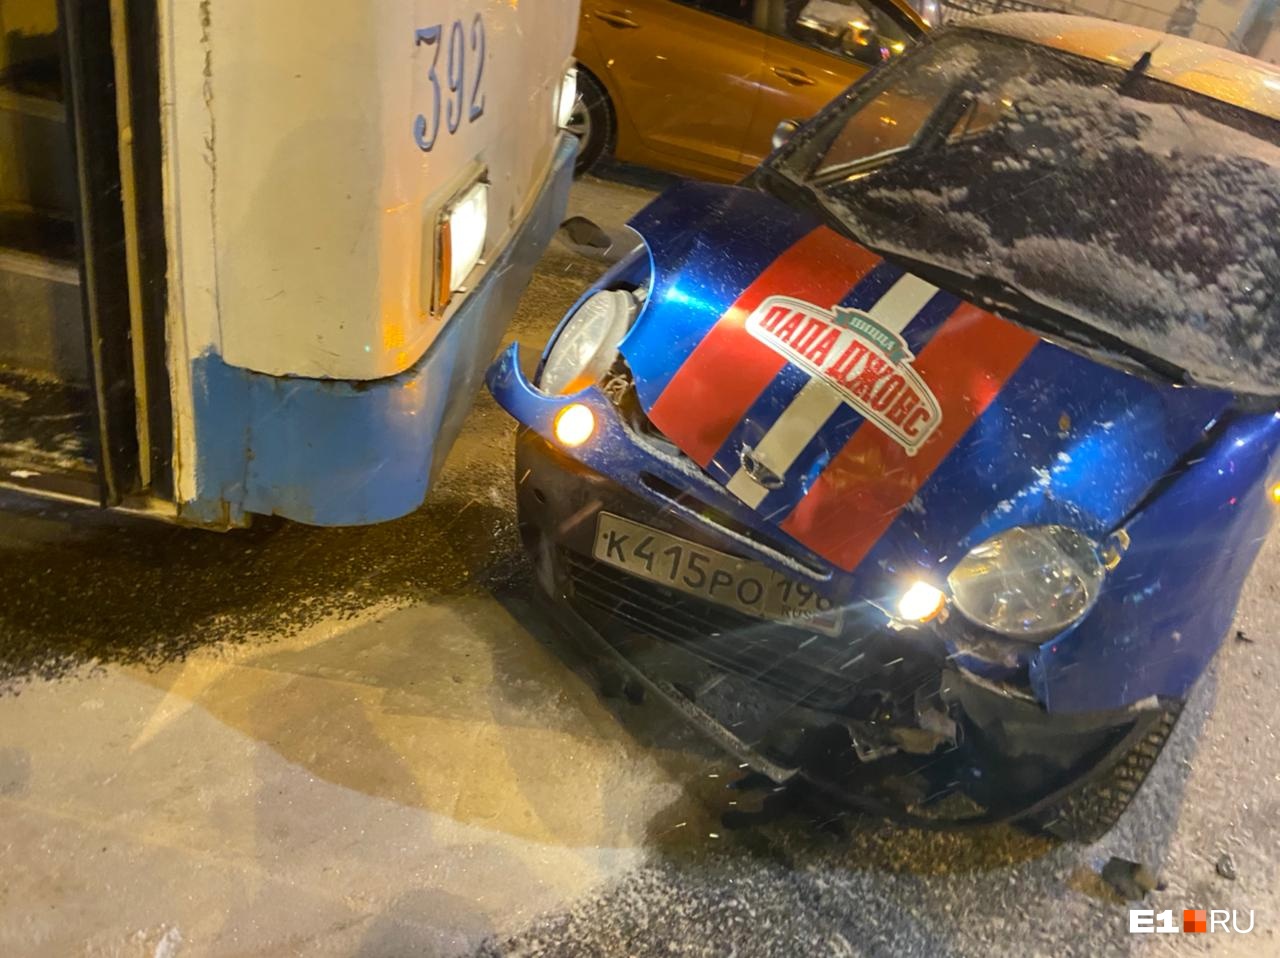 В Екатеринбурге Land Cruiser устроил аварию с тремя авто, троллейбусом и скрылся: видео момента ДТП